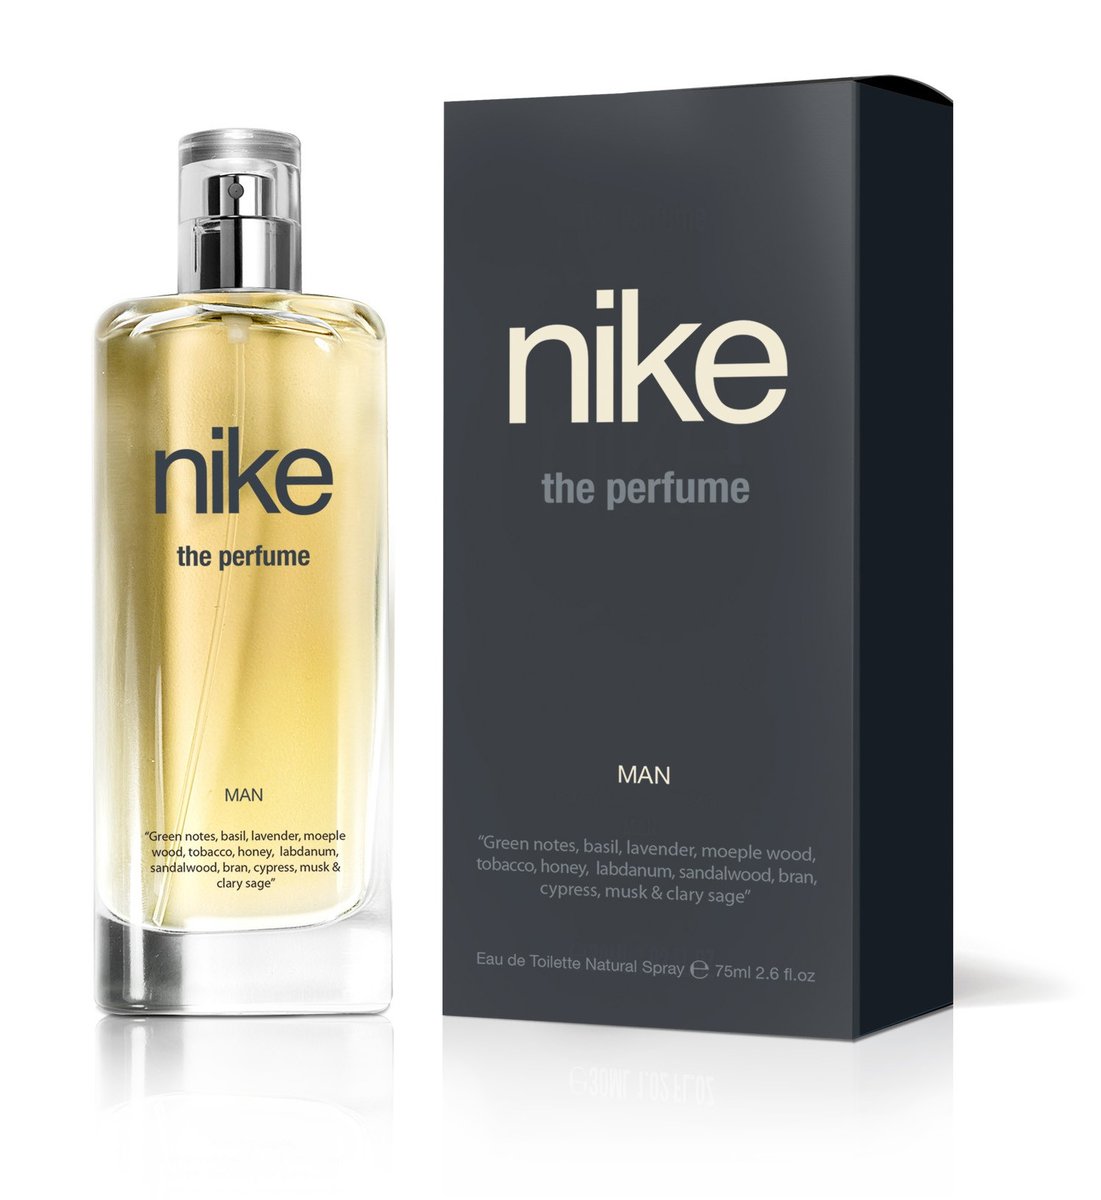 nike the perfume man